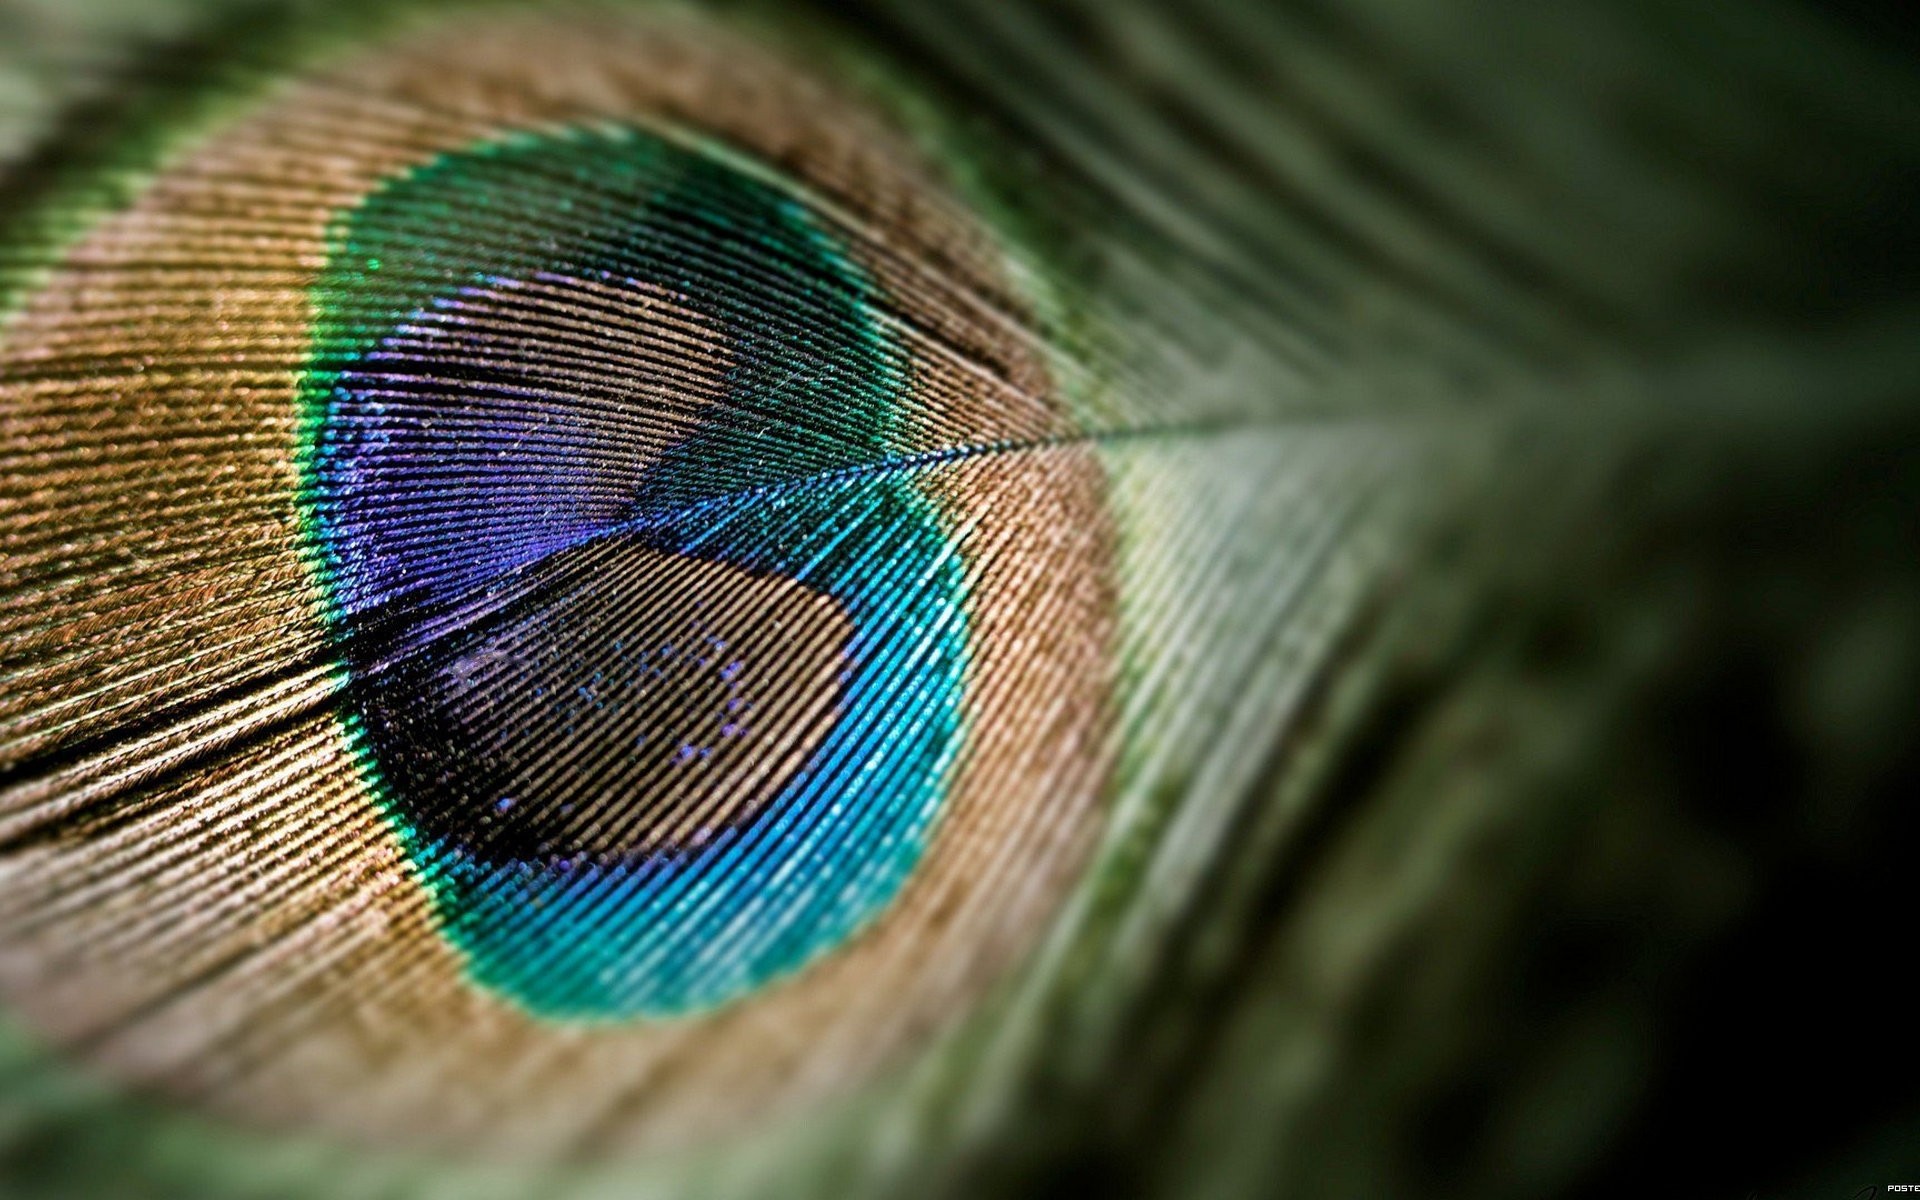 животные природа рабочего стола перо цвет яркий шаблон текстура аннотация радужный дизайн крупным планом птица павлин